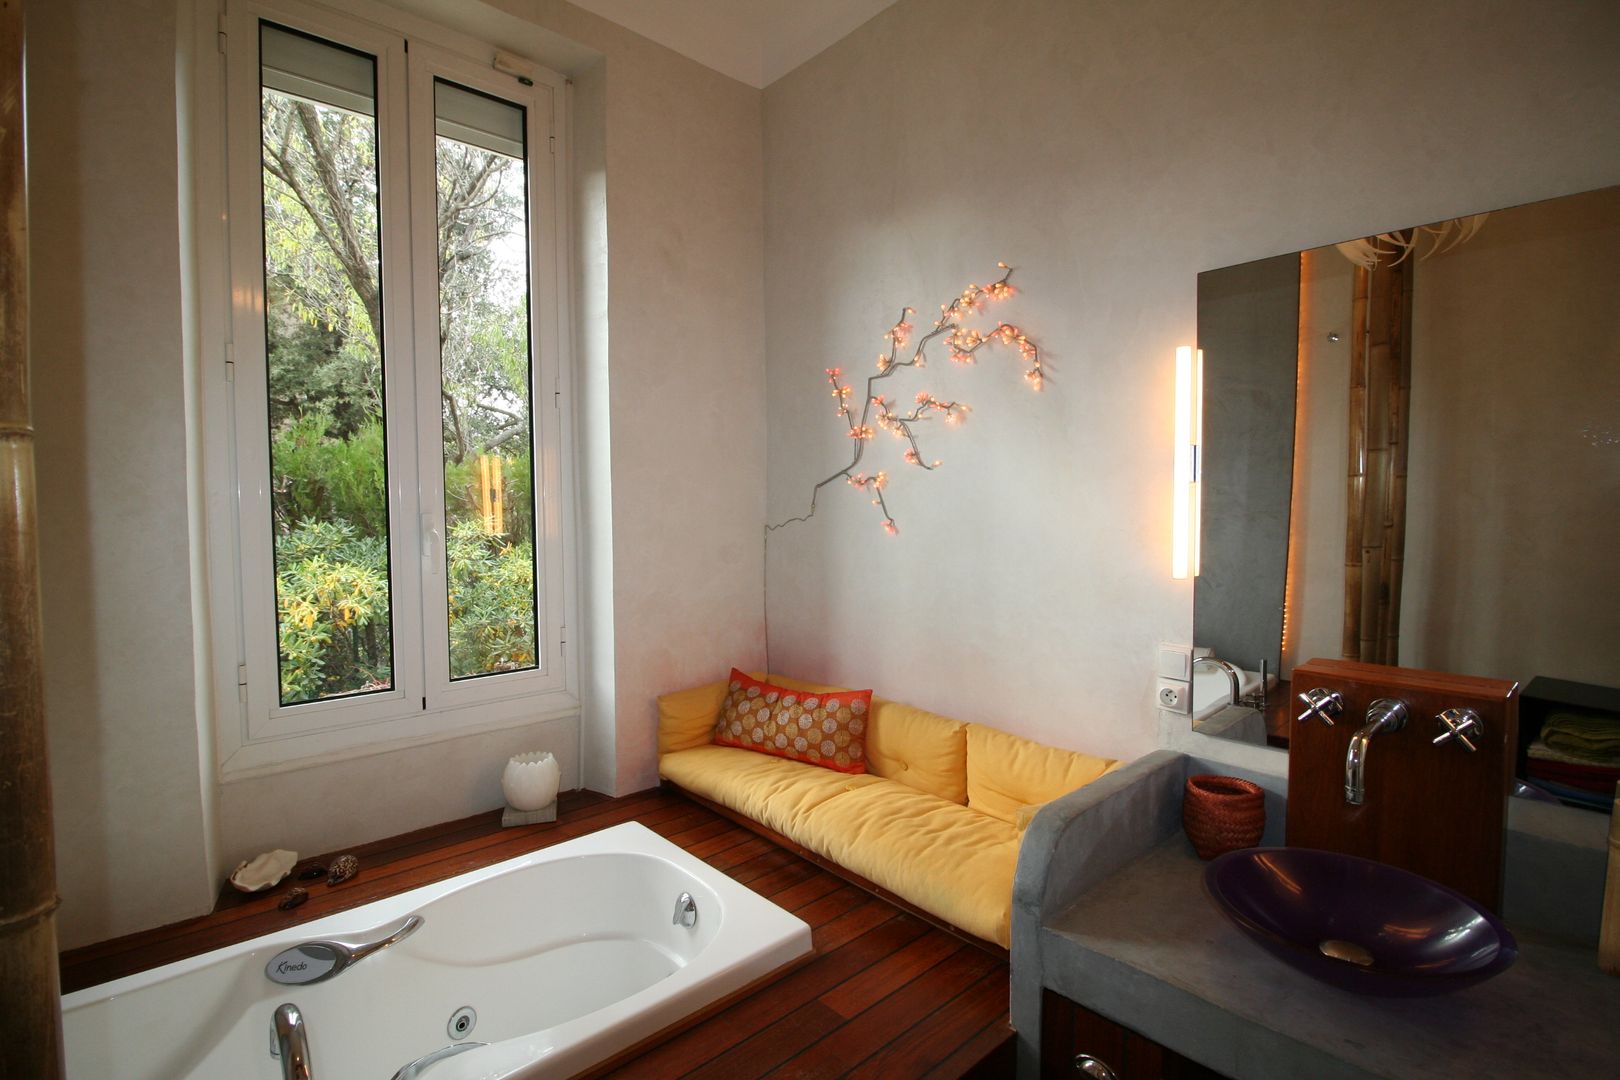 Salle de bain avec vue sur la verdure, LM Interieur Design LM Interieur Design Asyatik Banyo